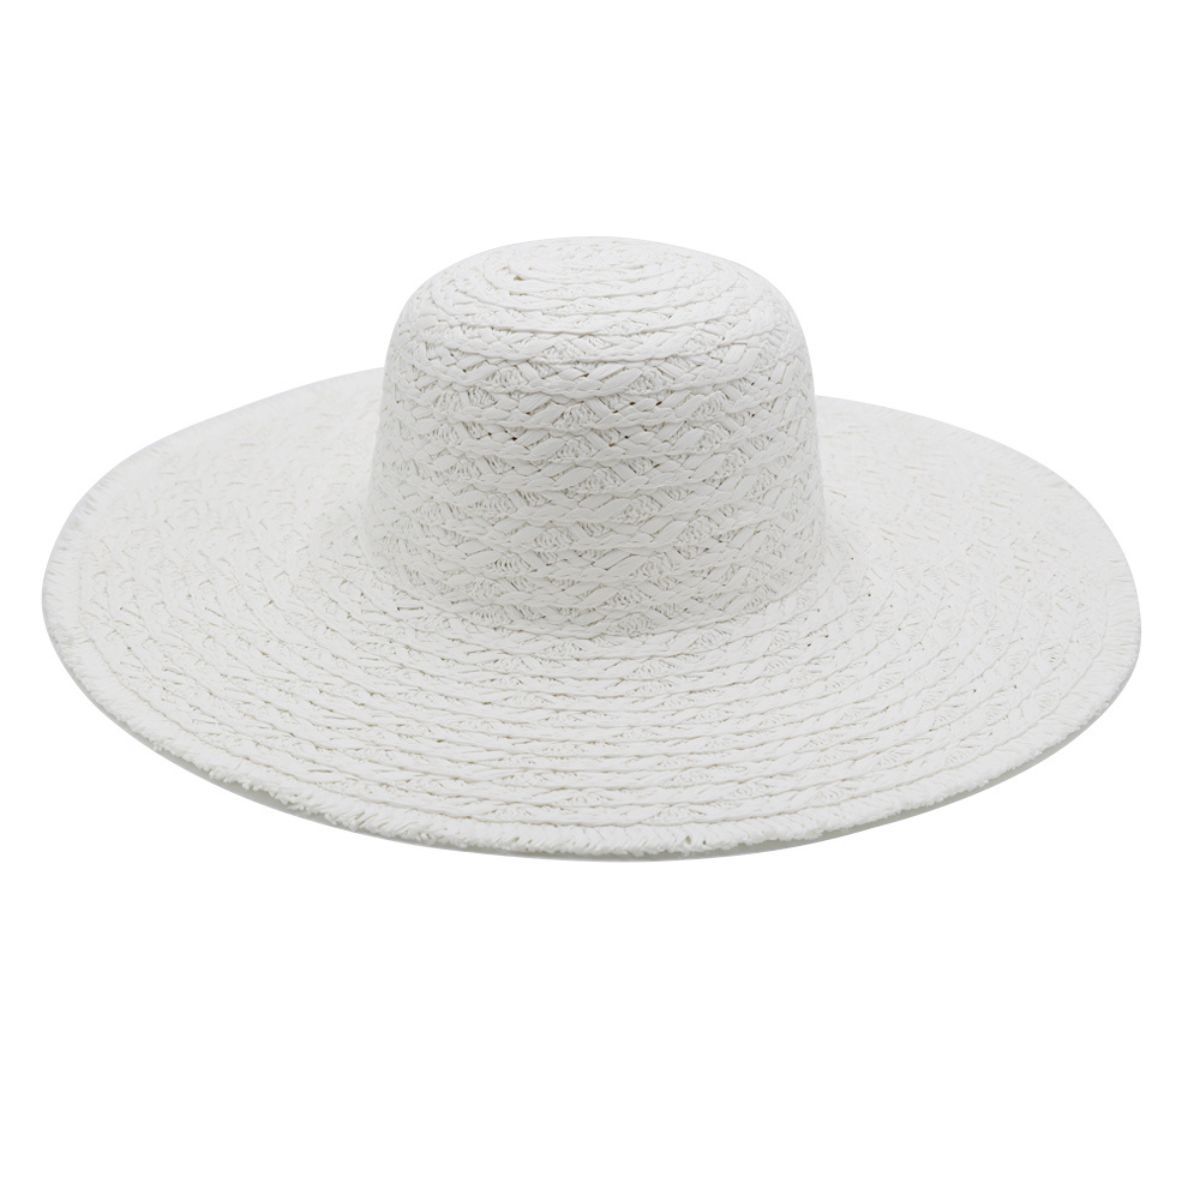 Solid White Floppy Sun Hat